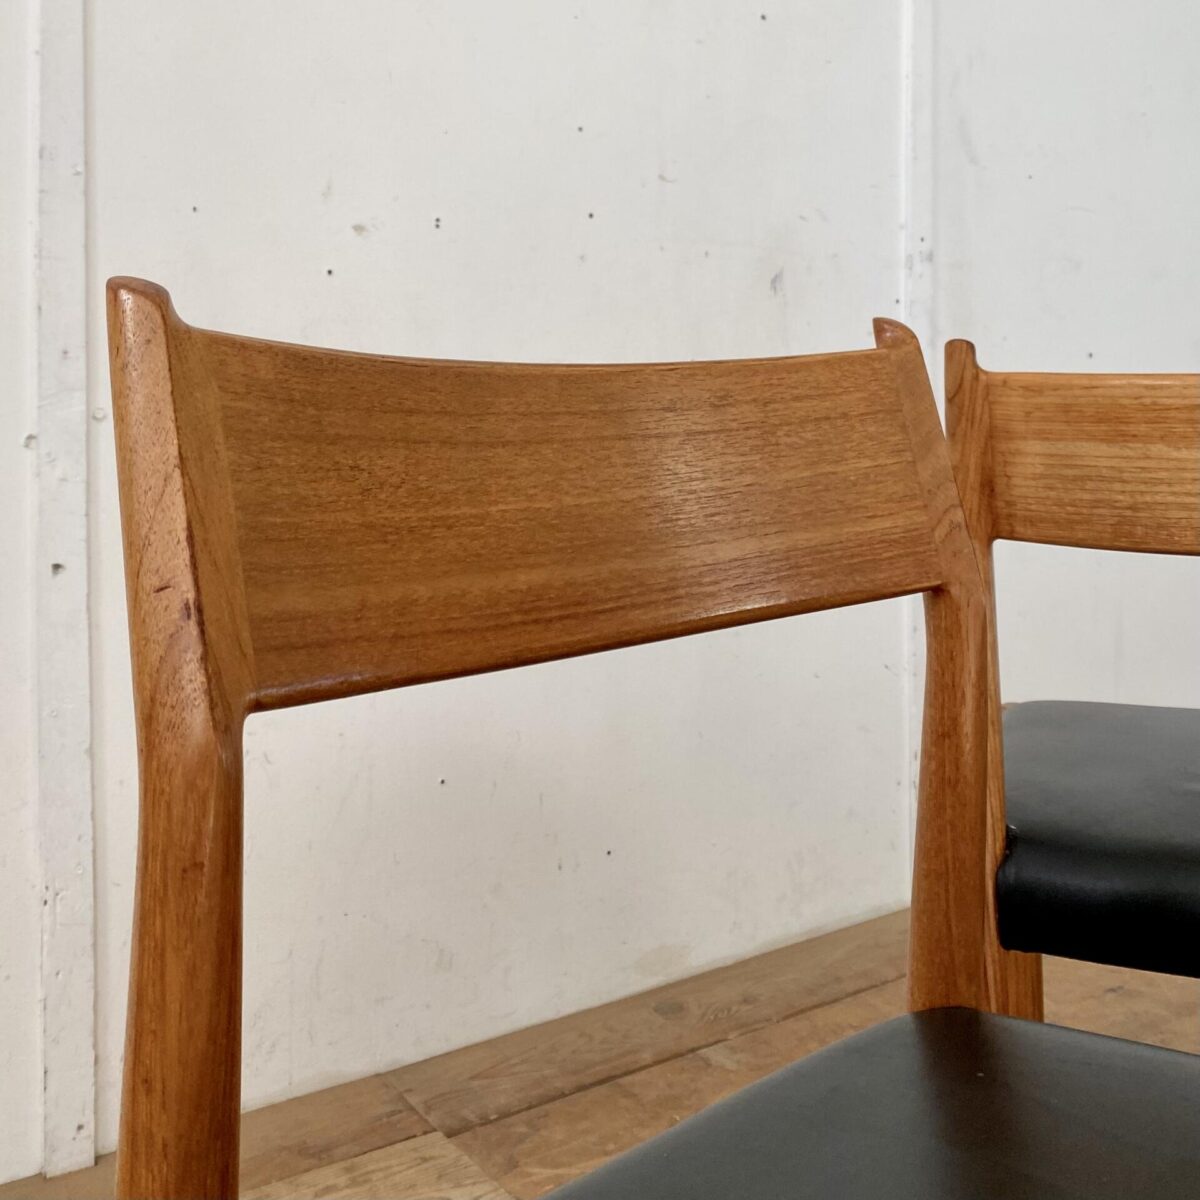 Deuxieme.shop midcentury Teak Esszimmer Stühle aus den 60er Jahren von Arne Vodder, Modell 418. Sitzhöhe ca. 47cm. Die Stühle sind in stabilem Zustand, der schlimmste Kratzer auf dem einen Polster ist dokumentiert. 